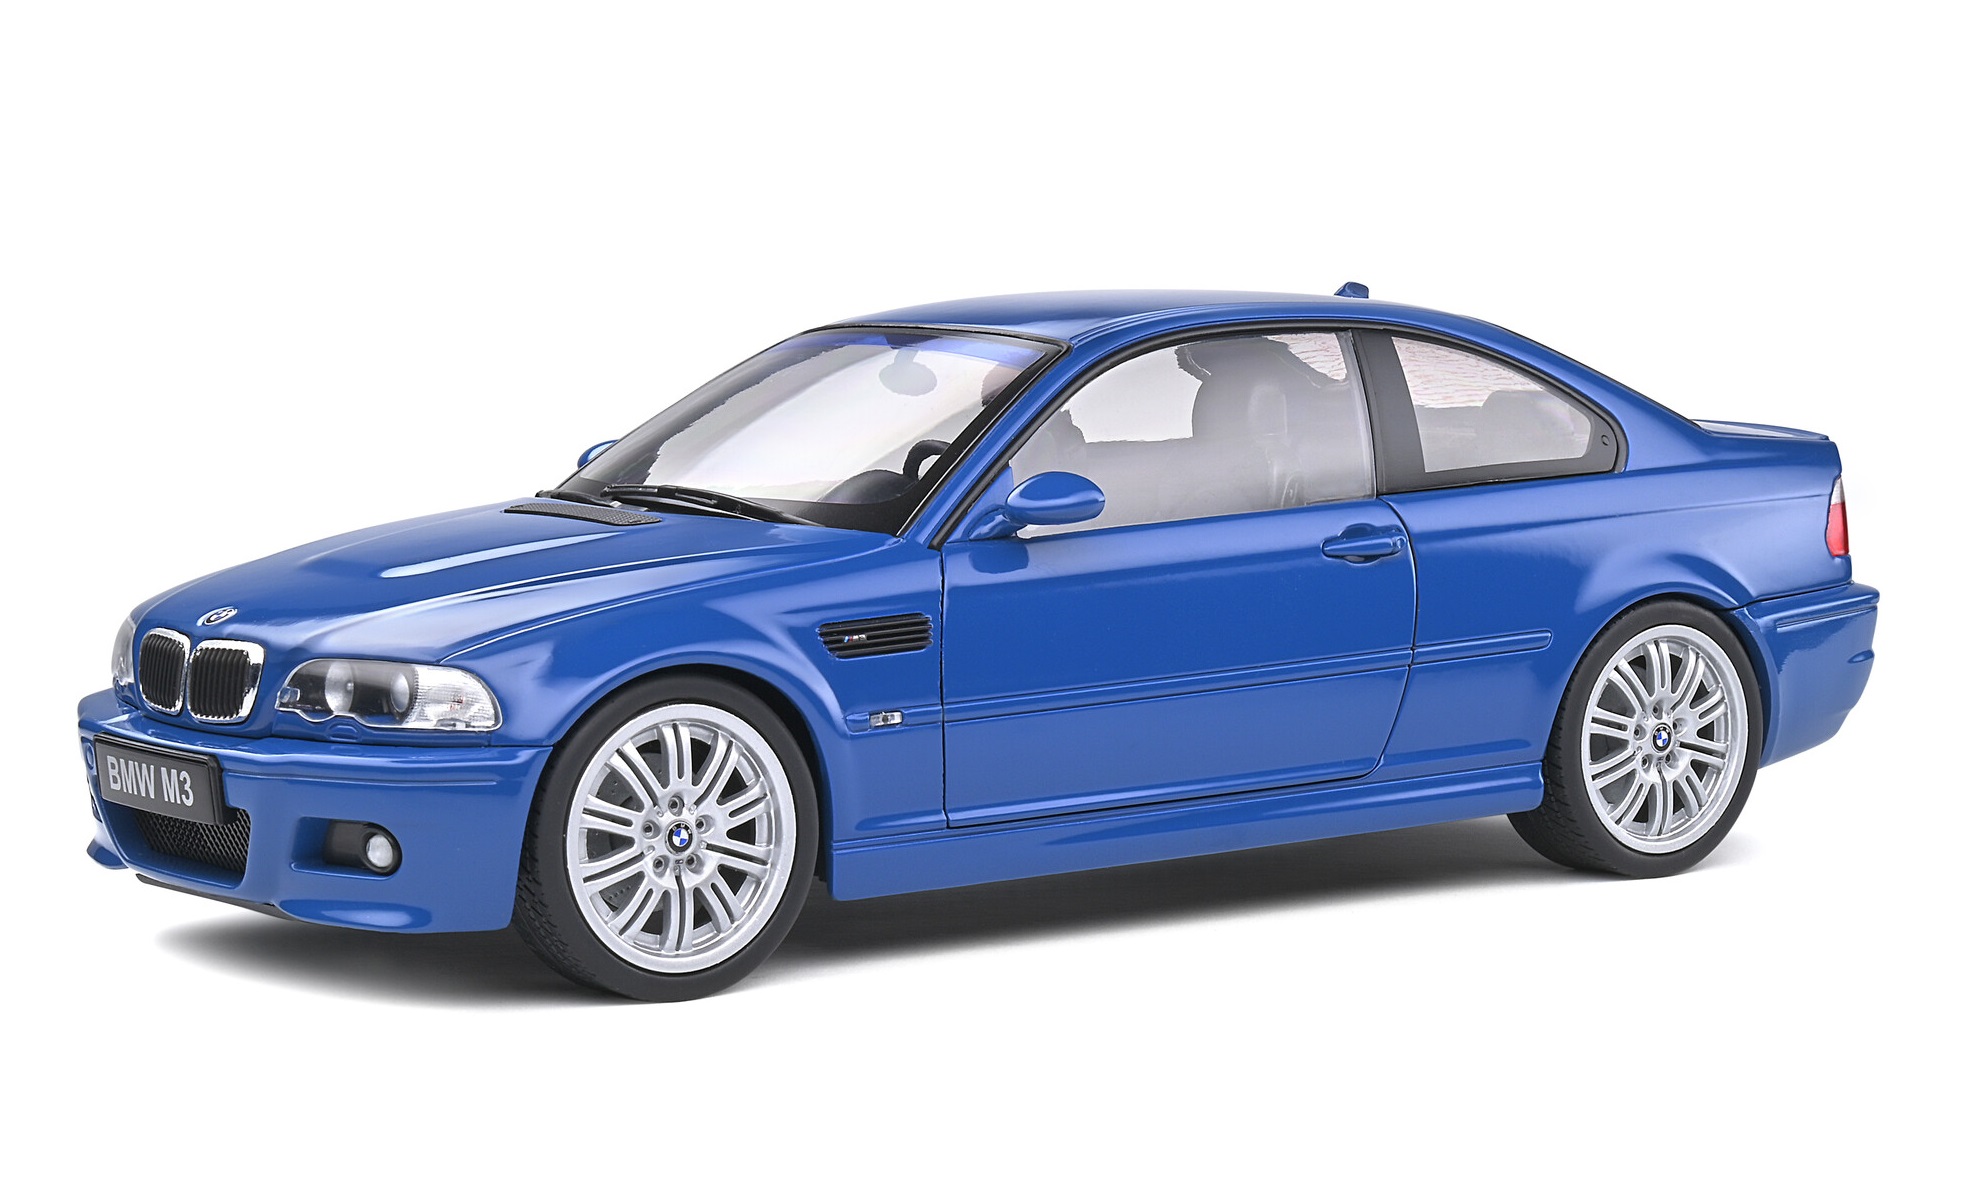 Macheta - BMW E46 M3 Coupe Albastru 2000, Scara 1:18 | Solido